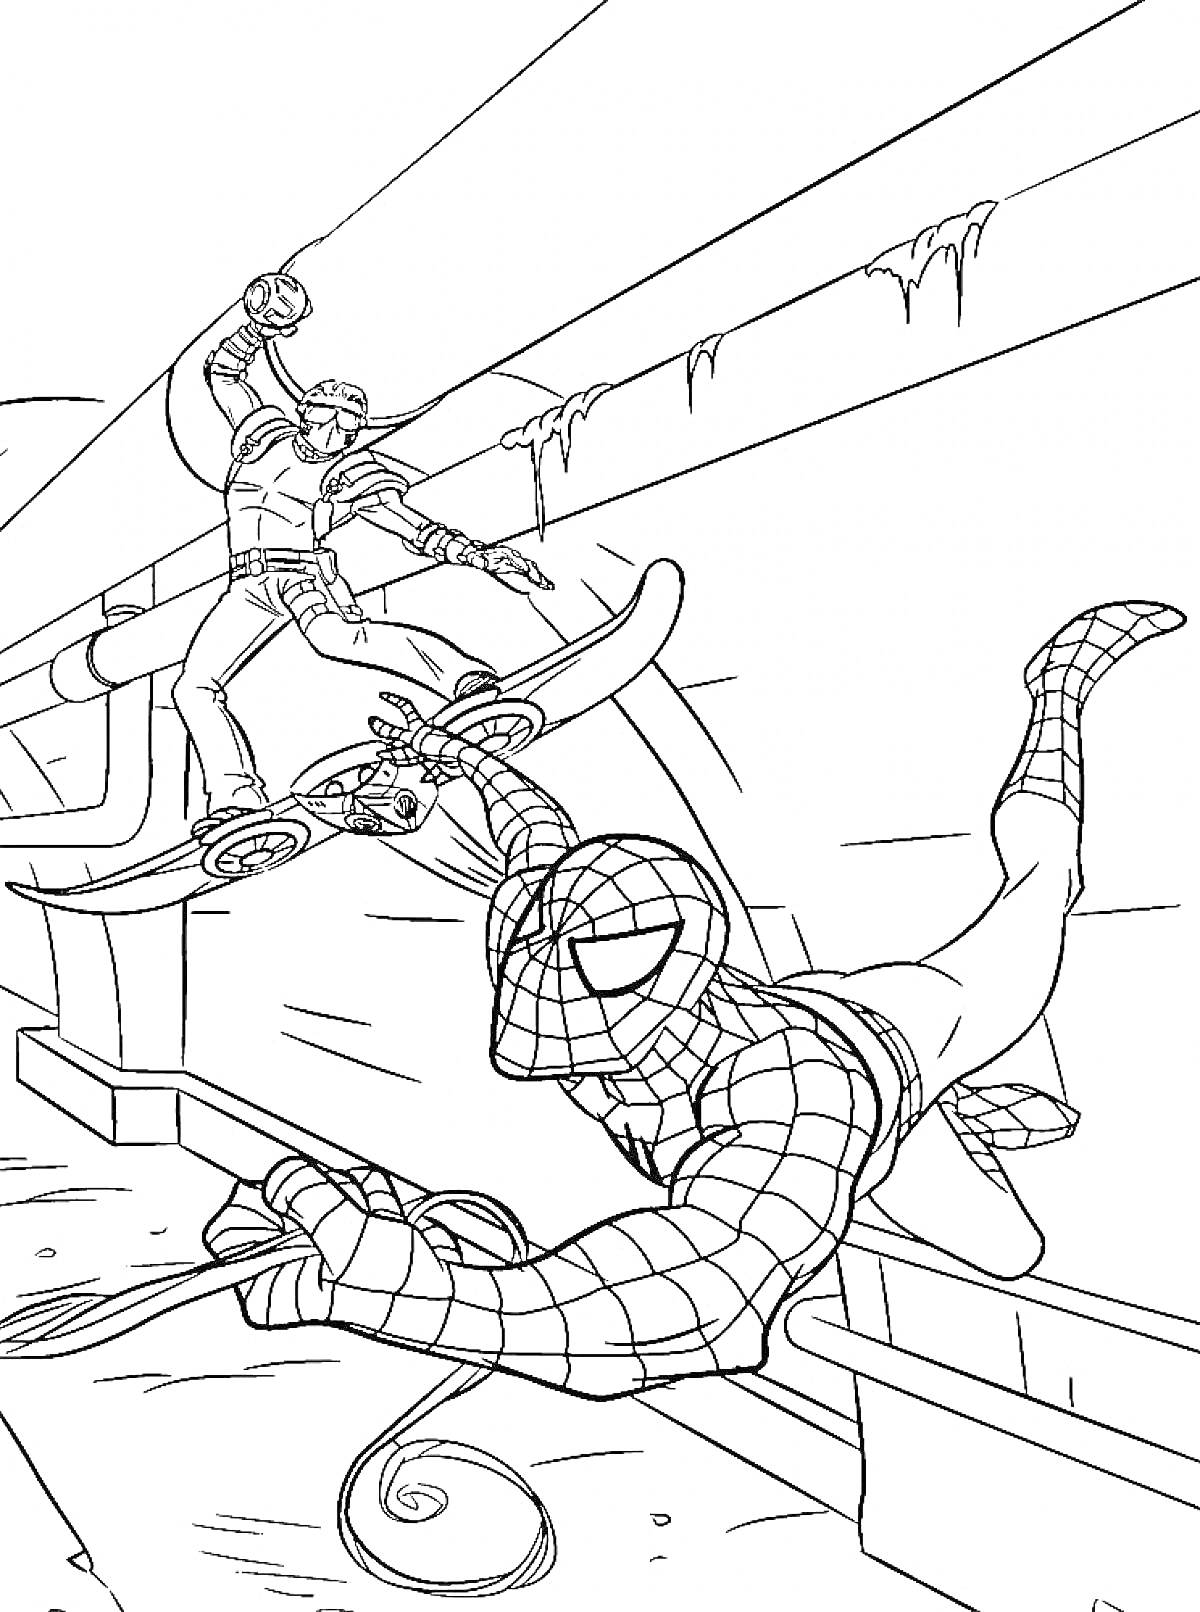 Человек-Паук сражается с противником на летающей платформе в подземелье